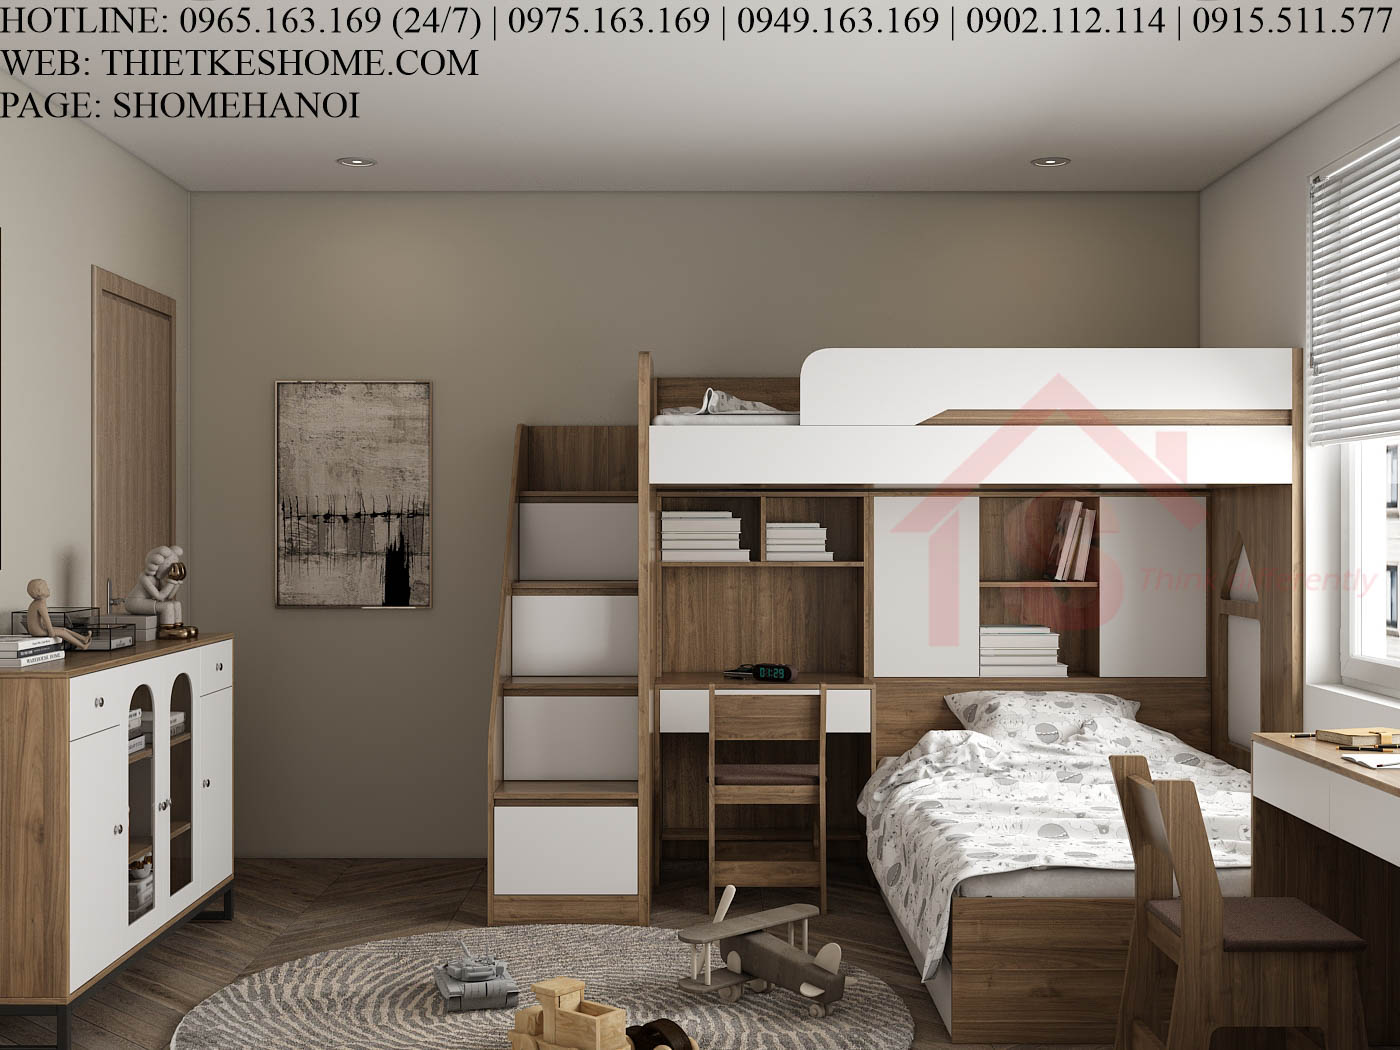 S HOME Combo mẫu nội thất phòng ngủ cho bé đẹp hiện đại tiện dụng SHOME6814